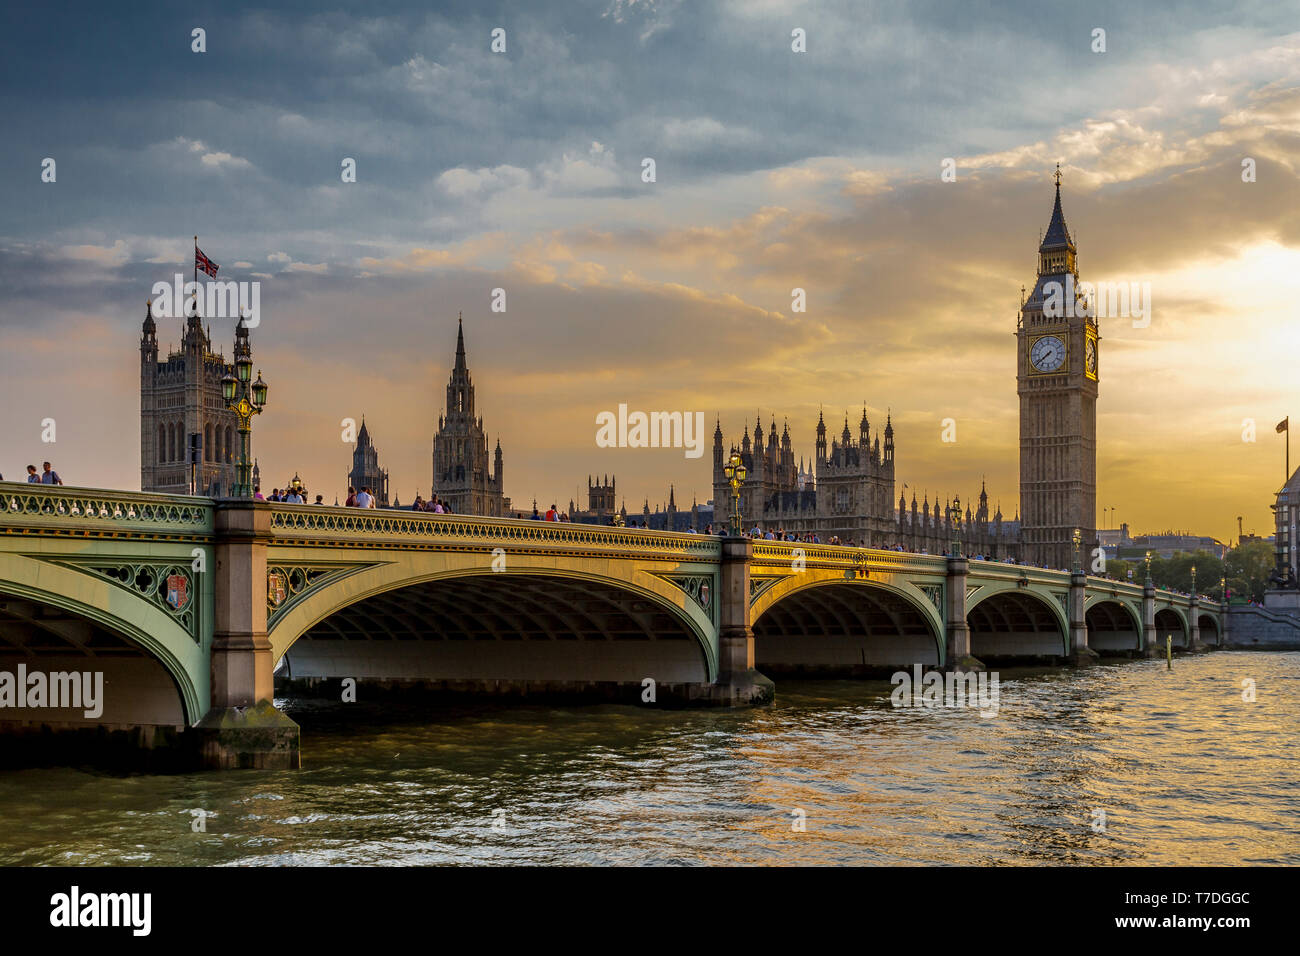 Luz de la tarde que se refleja en el Puente de Westminster y la Torre Victoria, también conocida como Big Ben en el fondo, Londres, Reino Unido Foto de stock